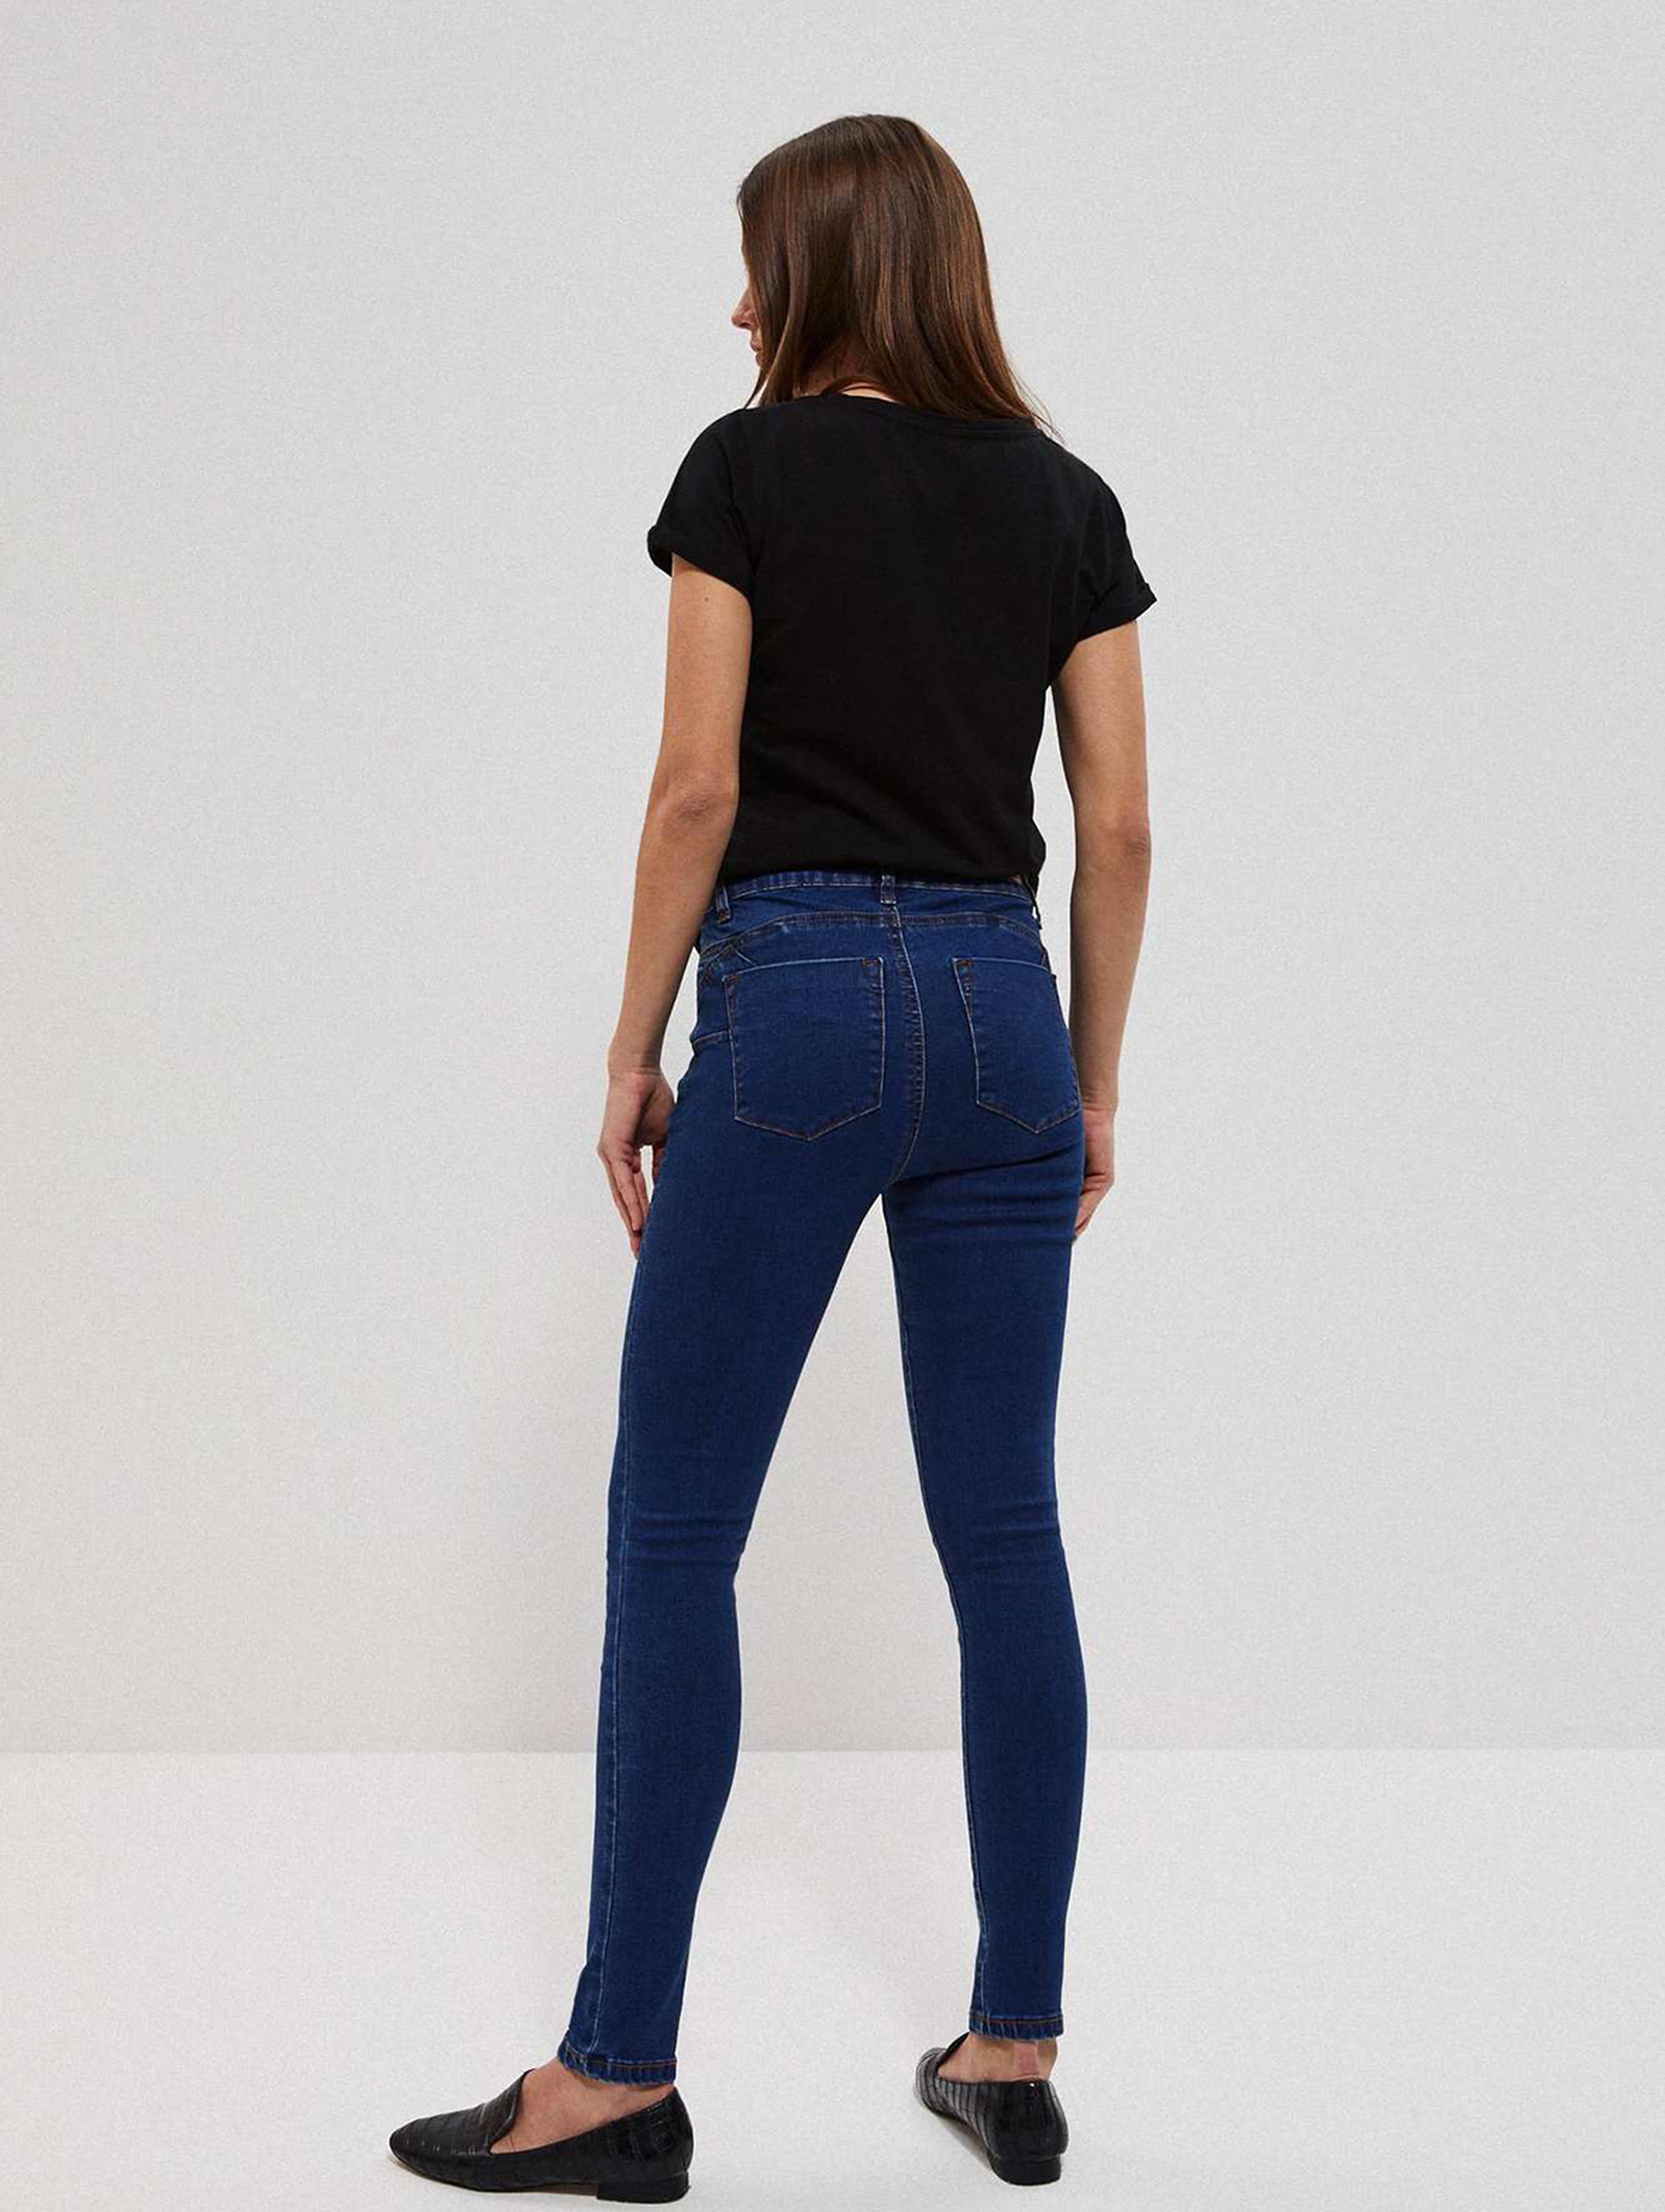 Spodnie jeansowe damskie push up